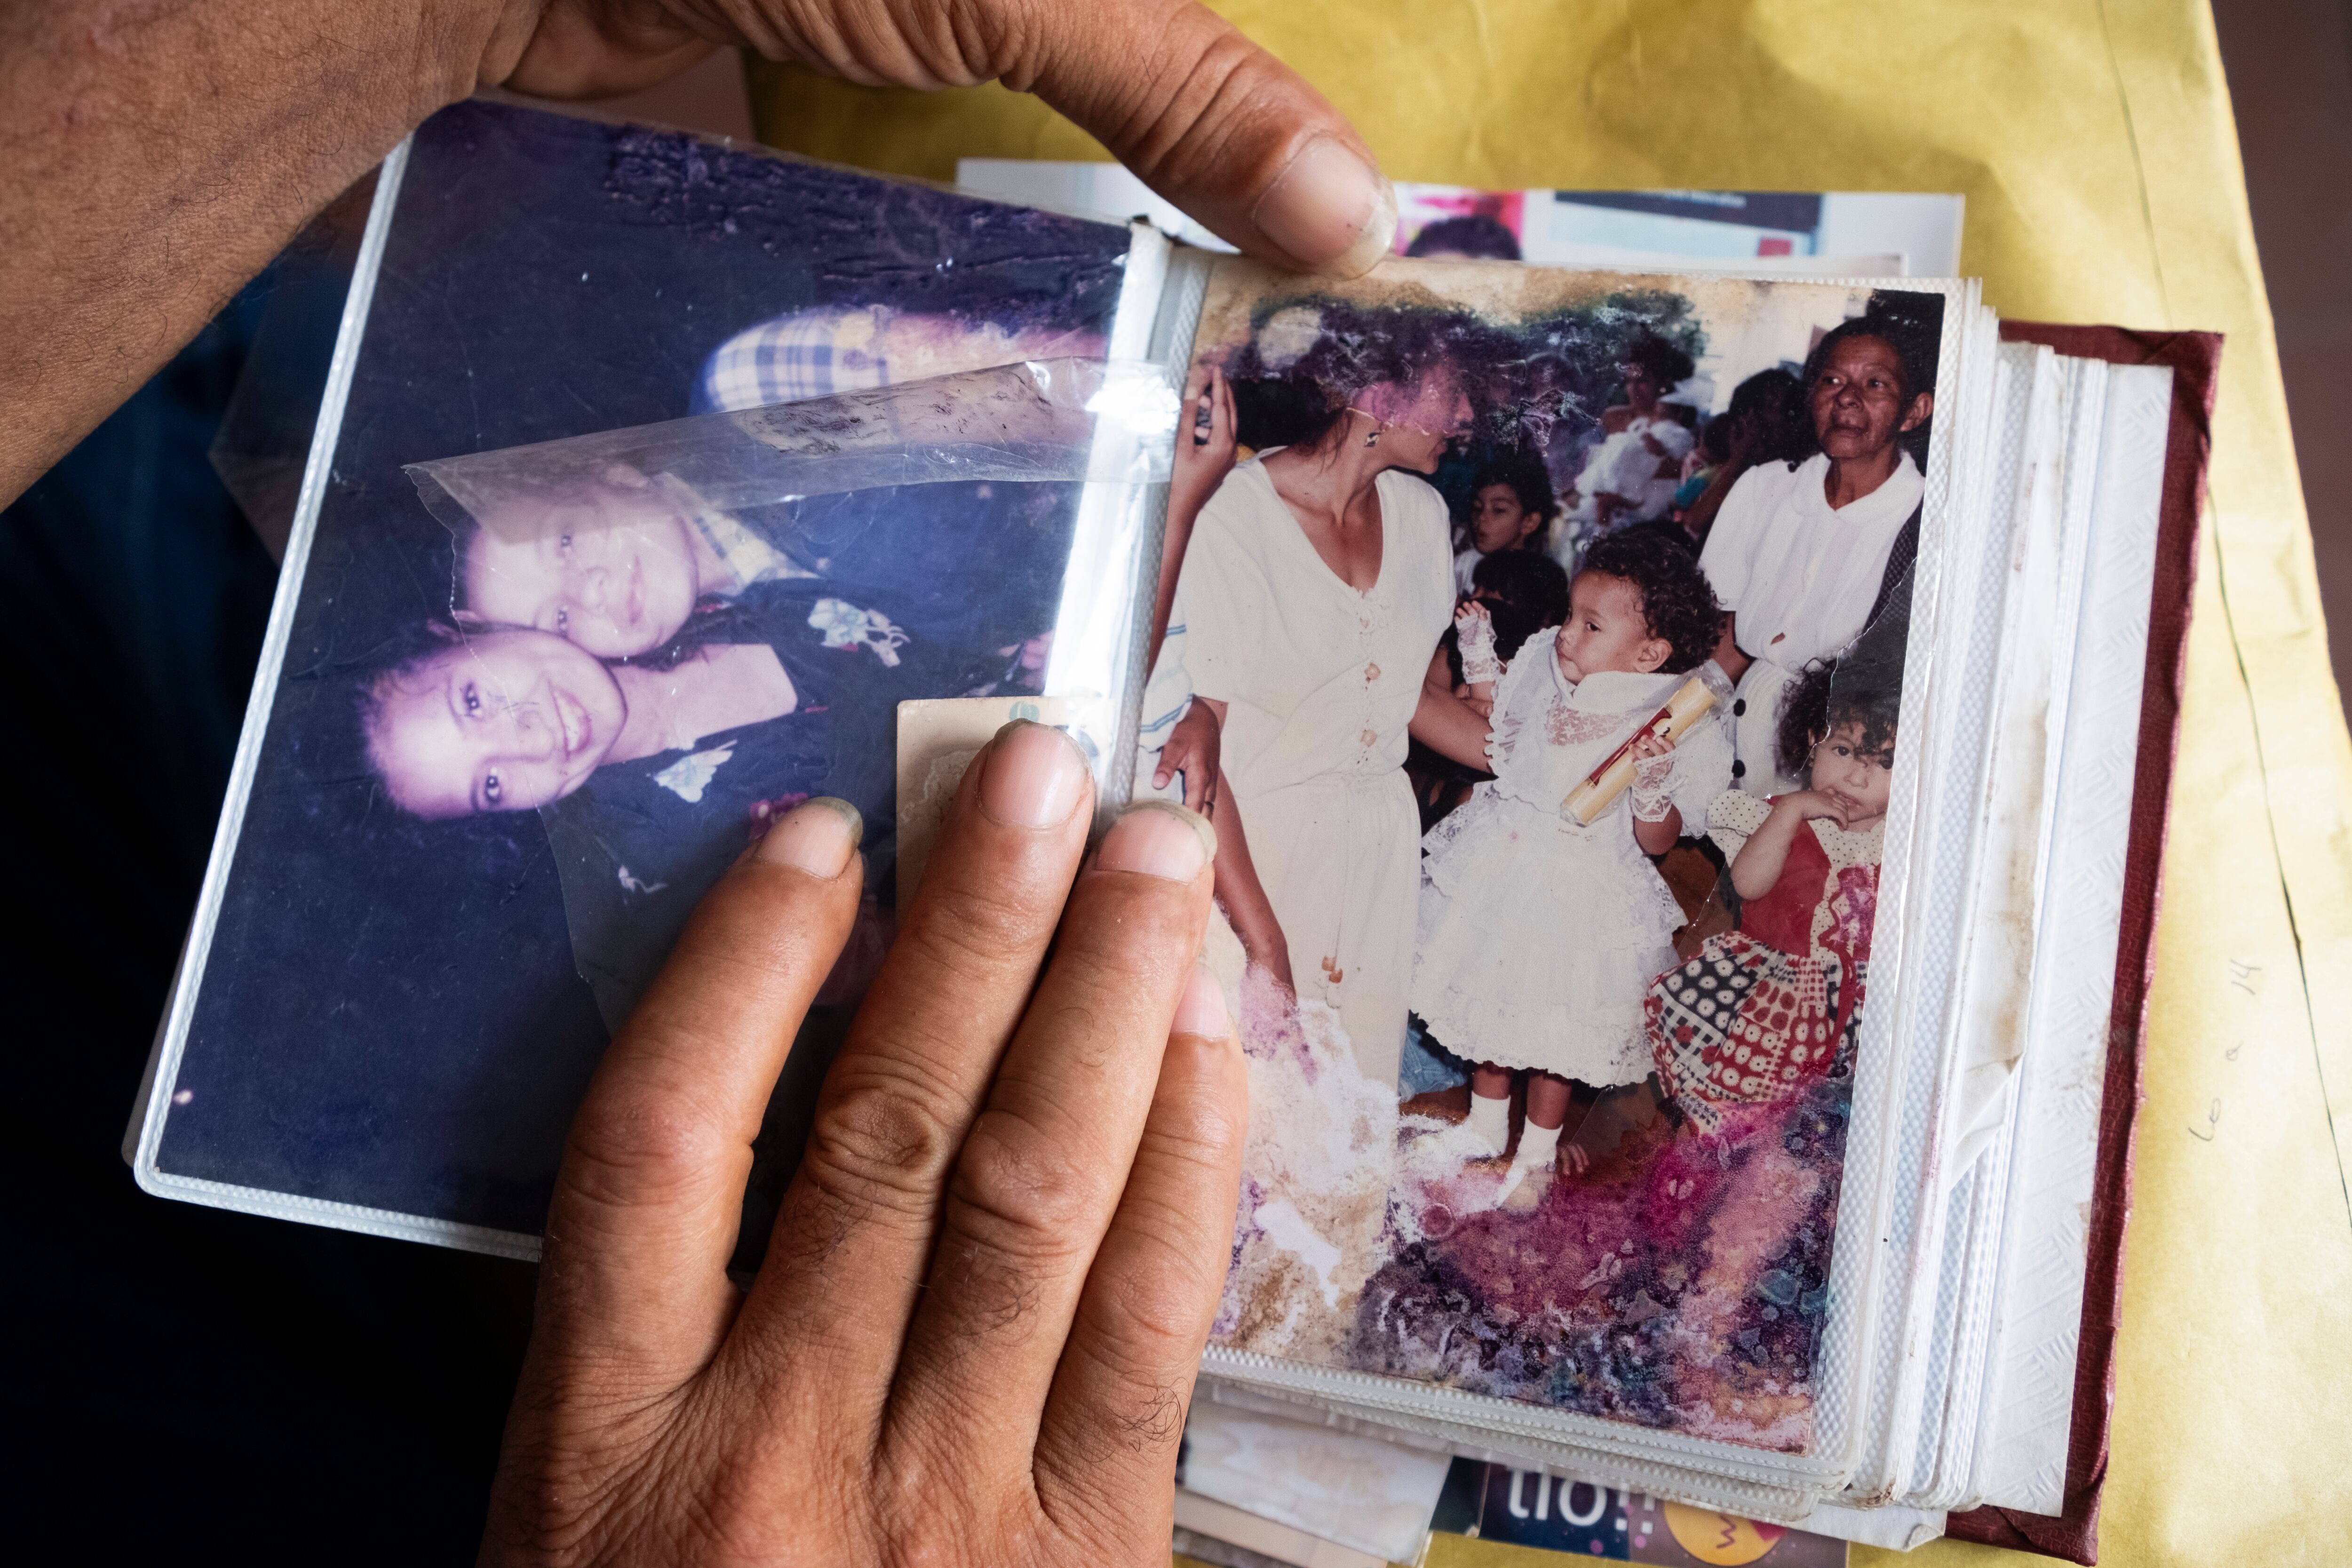 Fotografías de Stefanny Barranco en un álbum familiar, mostradas por su padre.